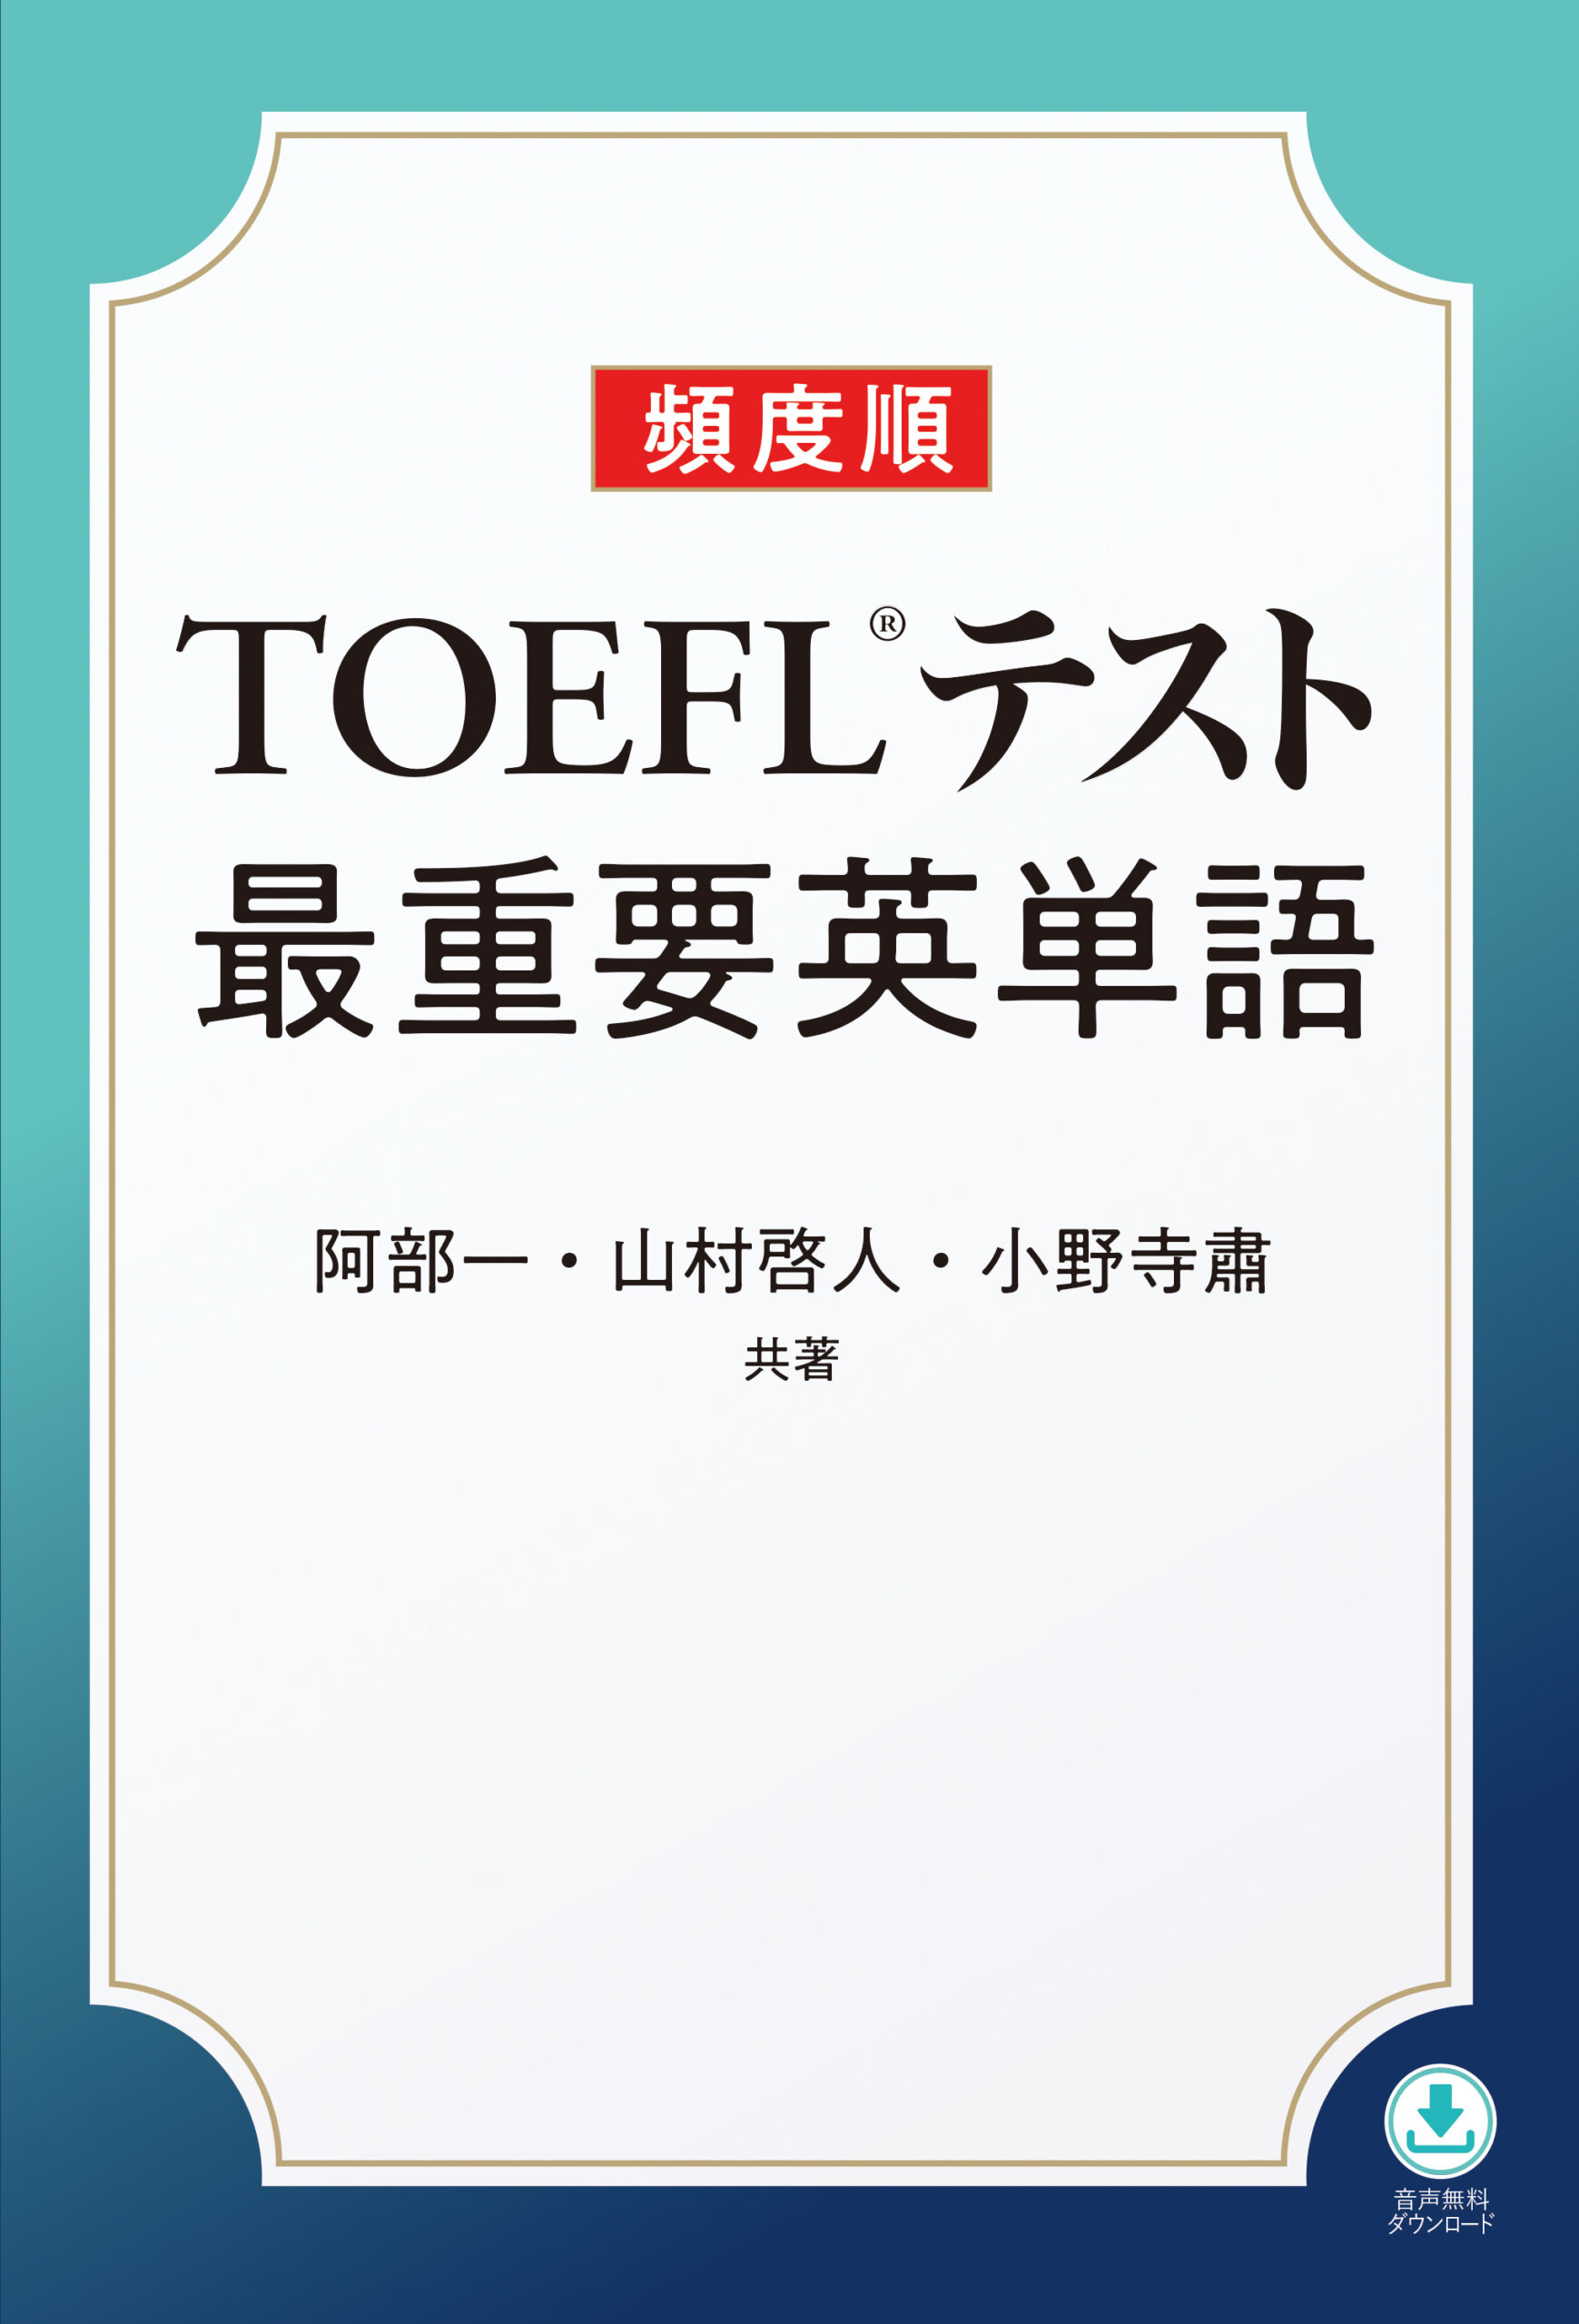 『頻度順 TOEFL®テスト最重要英単語』阿部一・山村啓人・小野寺粛 (著)